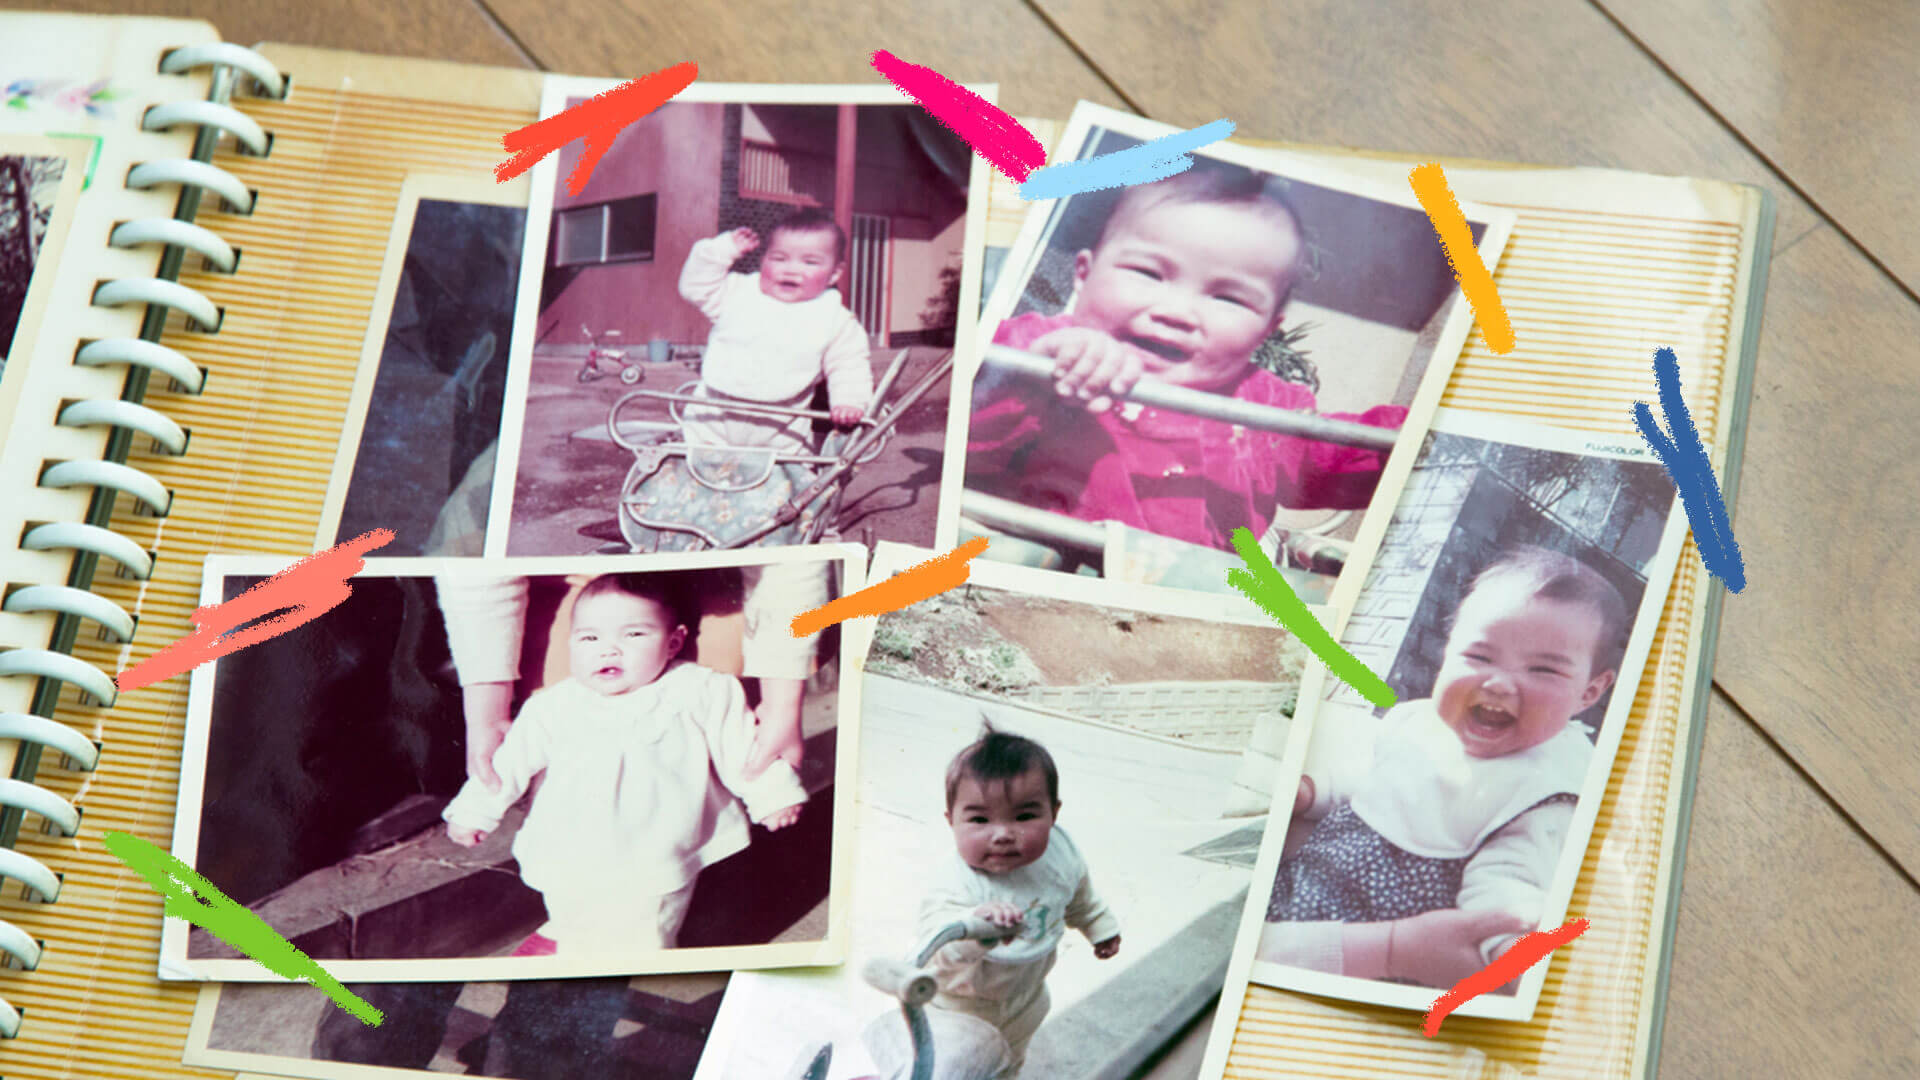 Em primeiro foto, um álbum fotográfico com diversas fotos de bebês e crianças espalhadas.